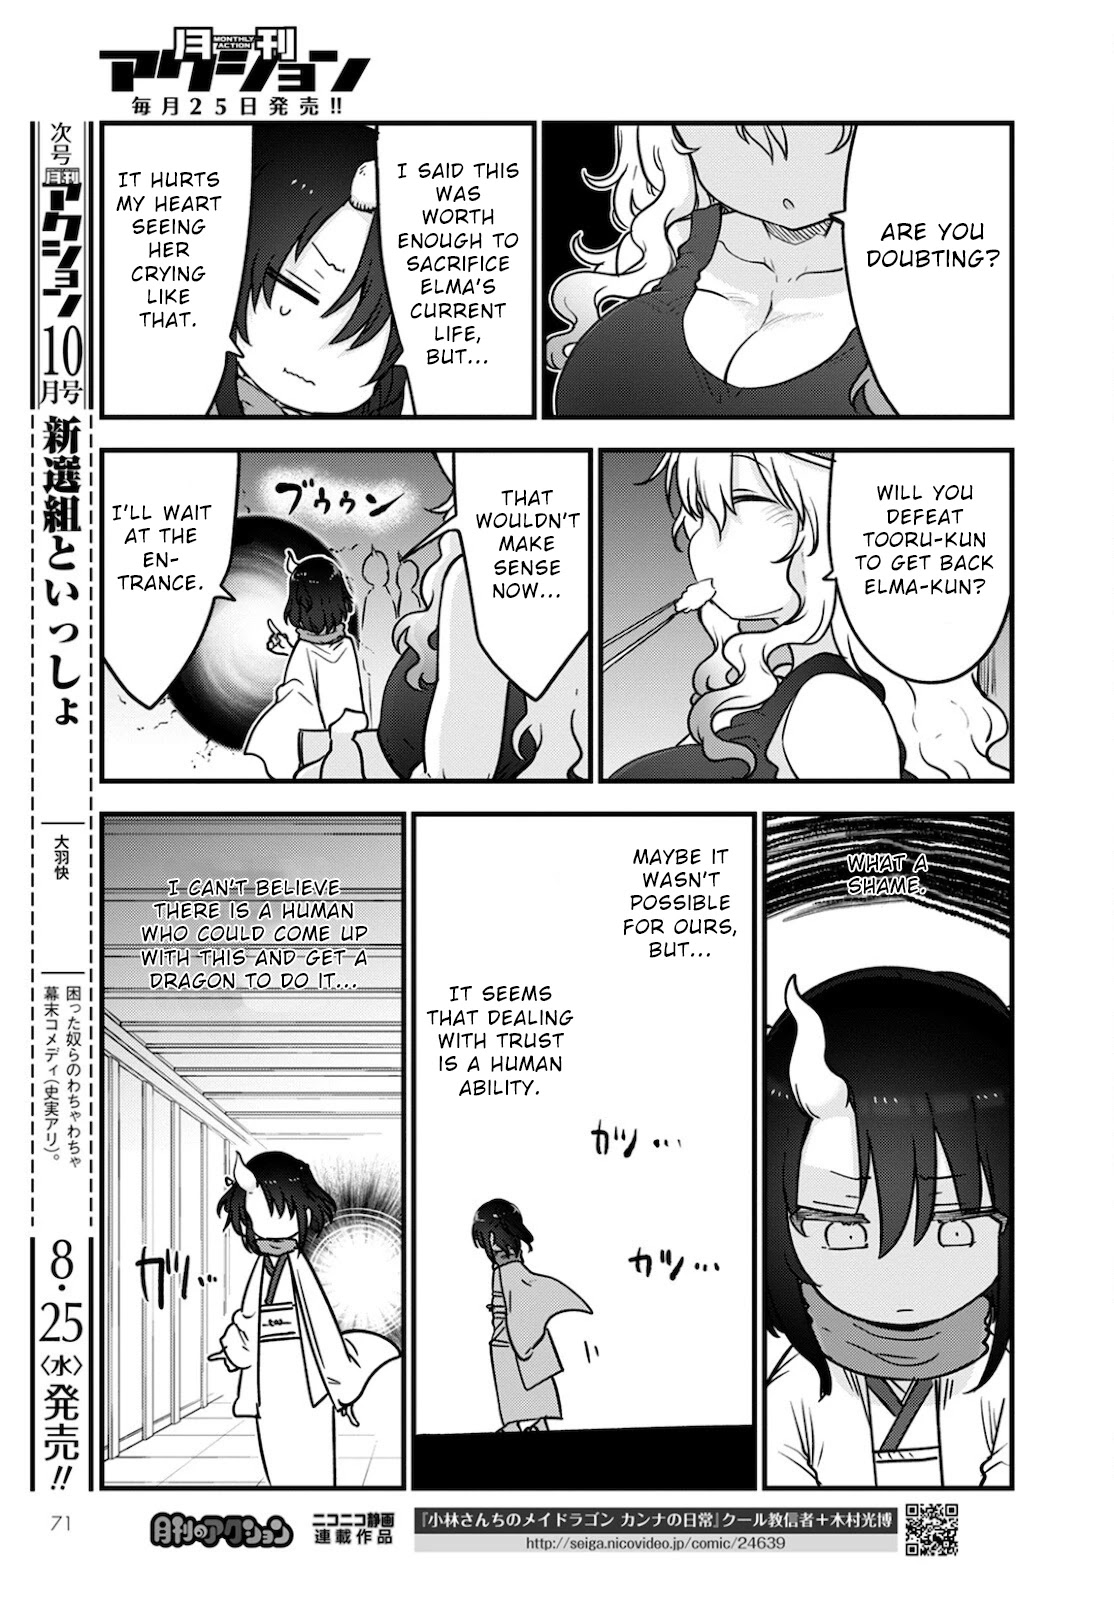 obayashi-san Chi no Maid Dragon, Miss Kobayashis Dragon Maid, The maid dragon of Kobayashi-san